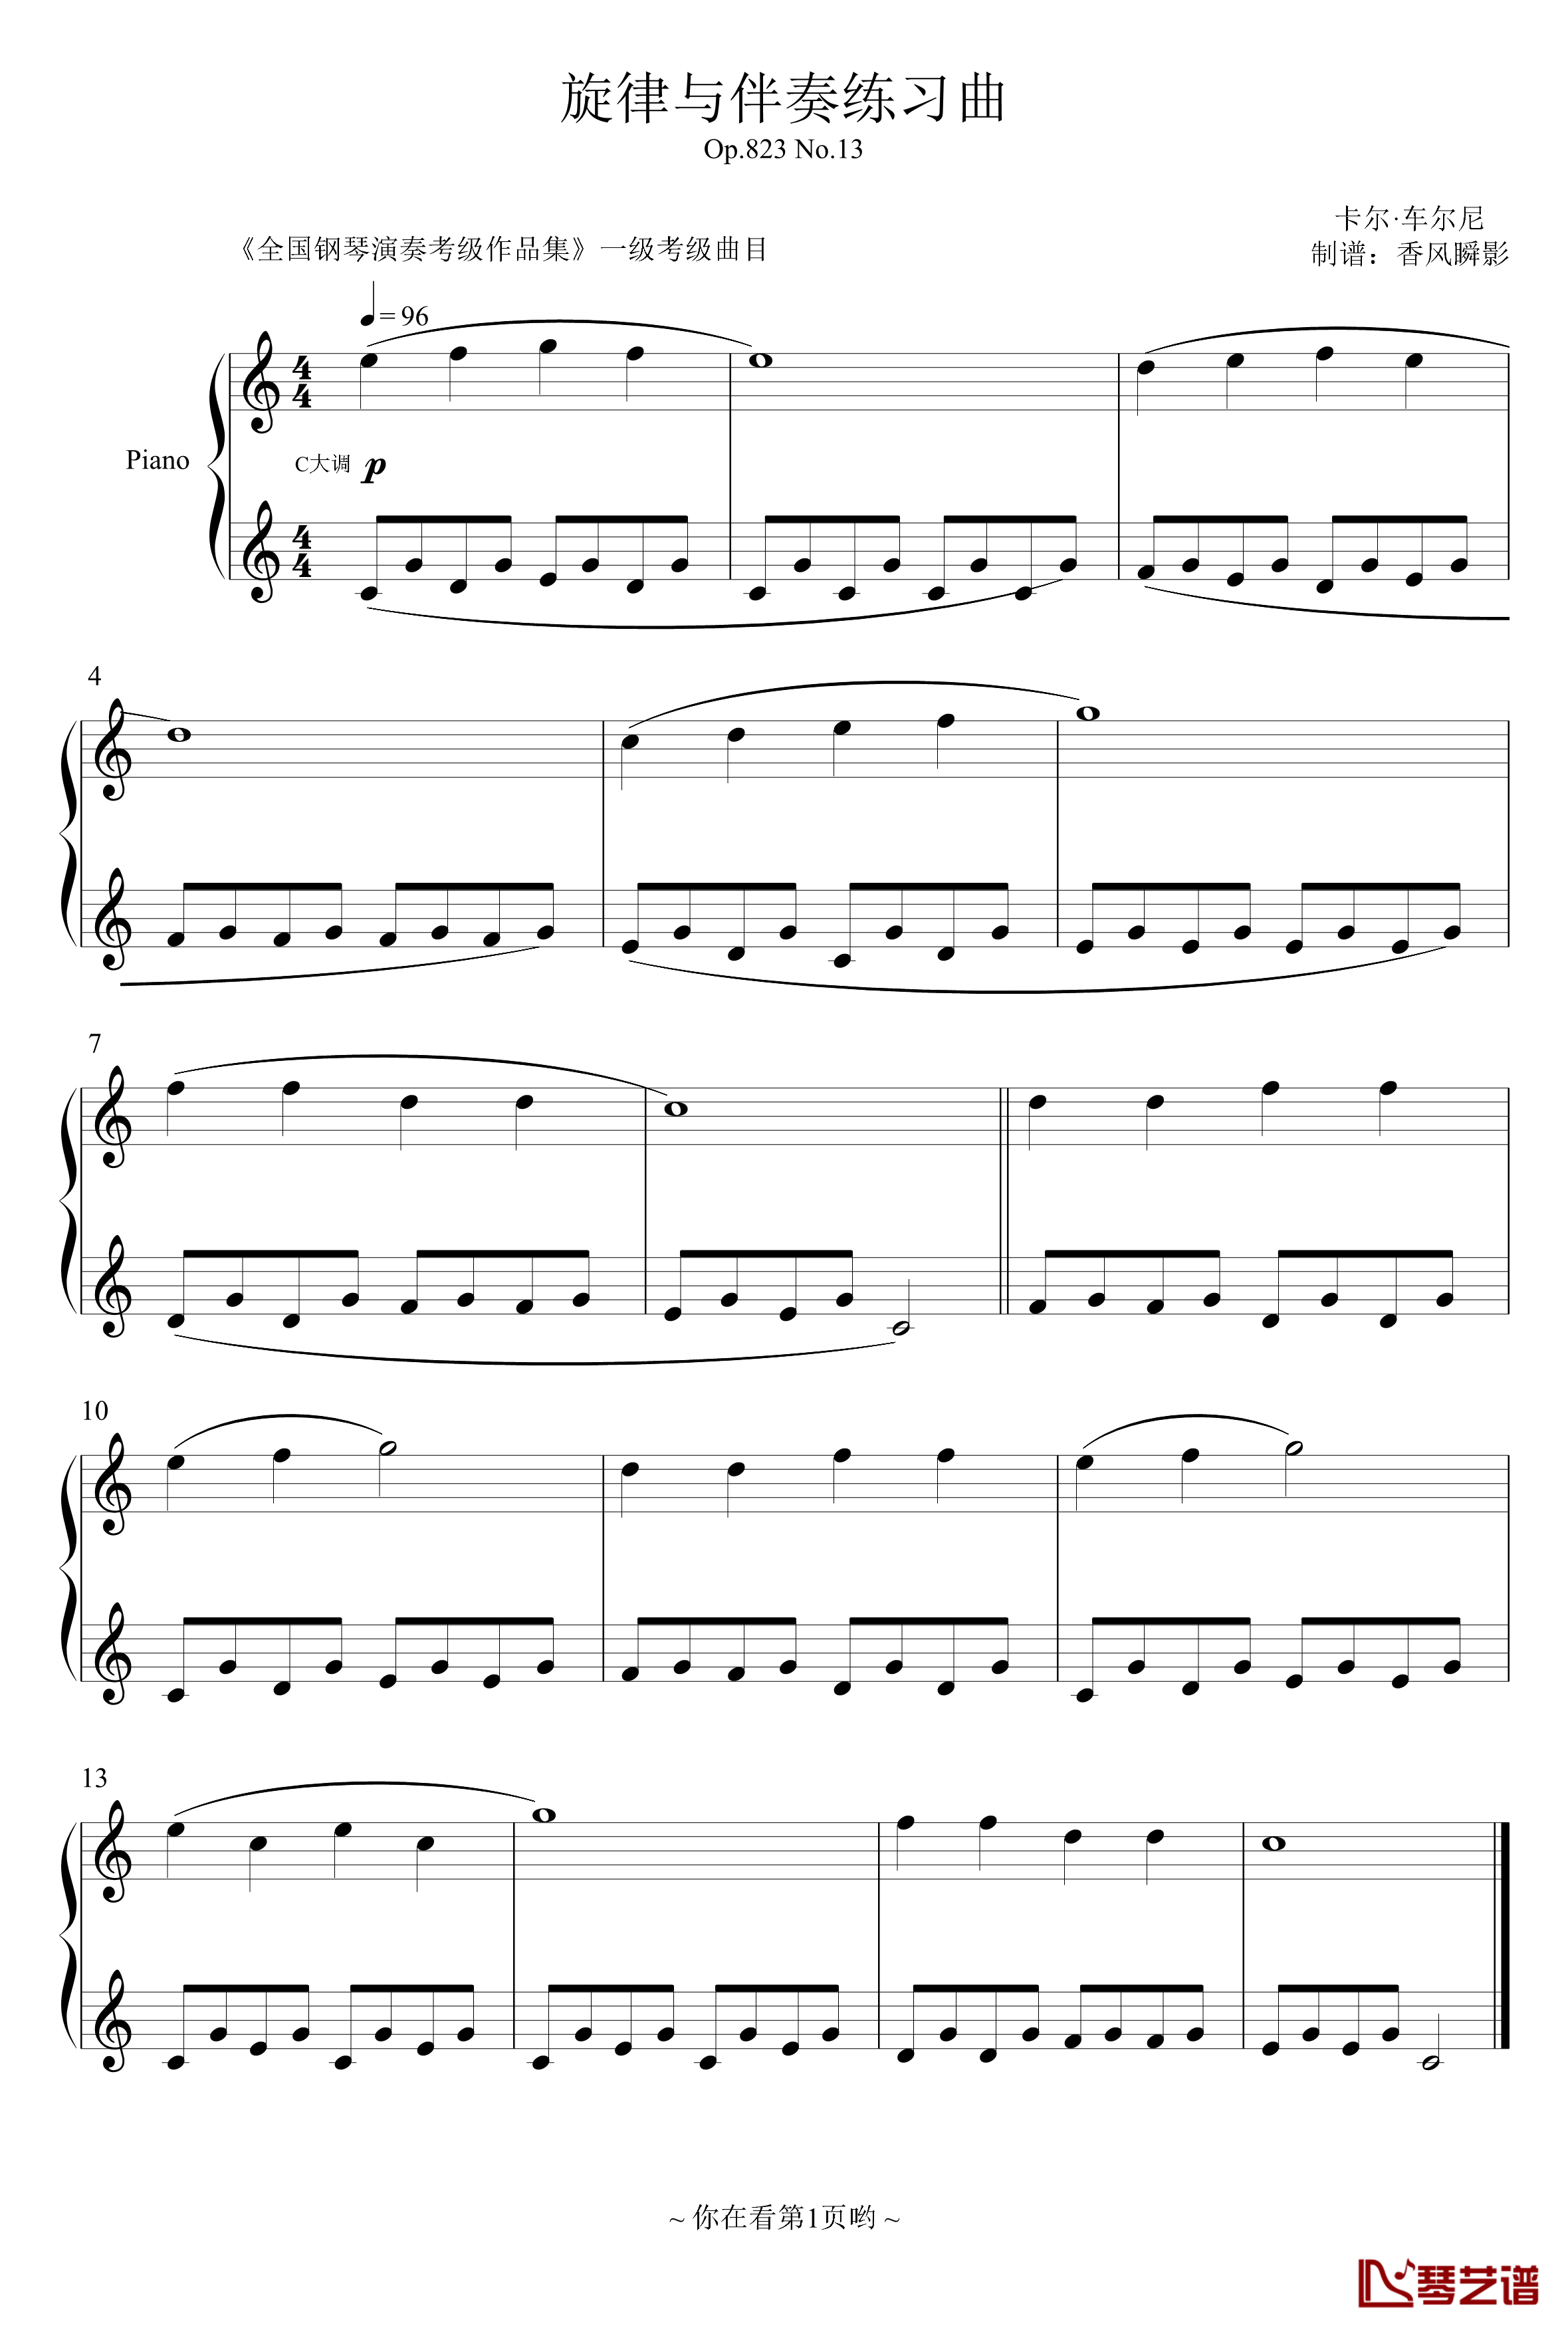 旋律与伴奏练习曲钢琴谱-Op.823 No.13-车尔尼-Czerny1